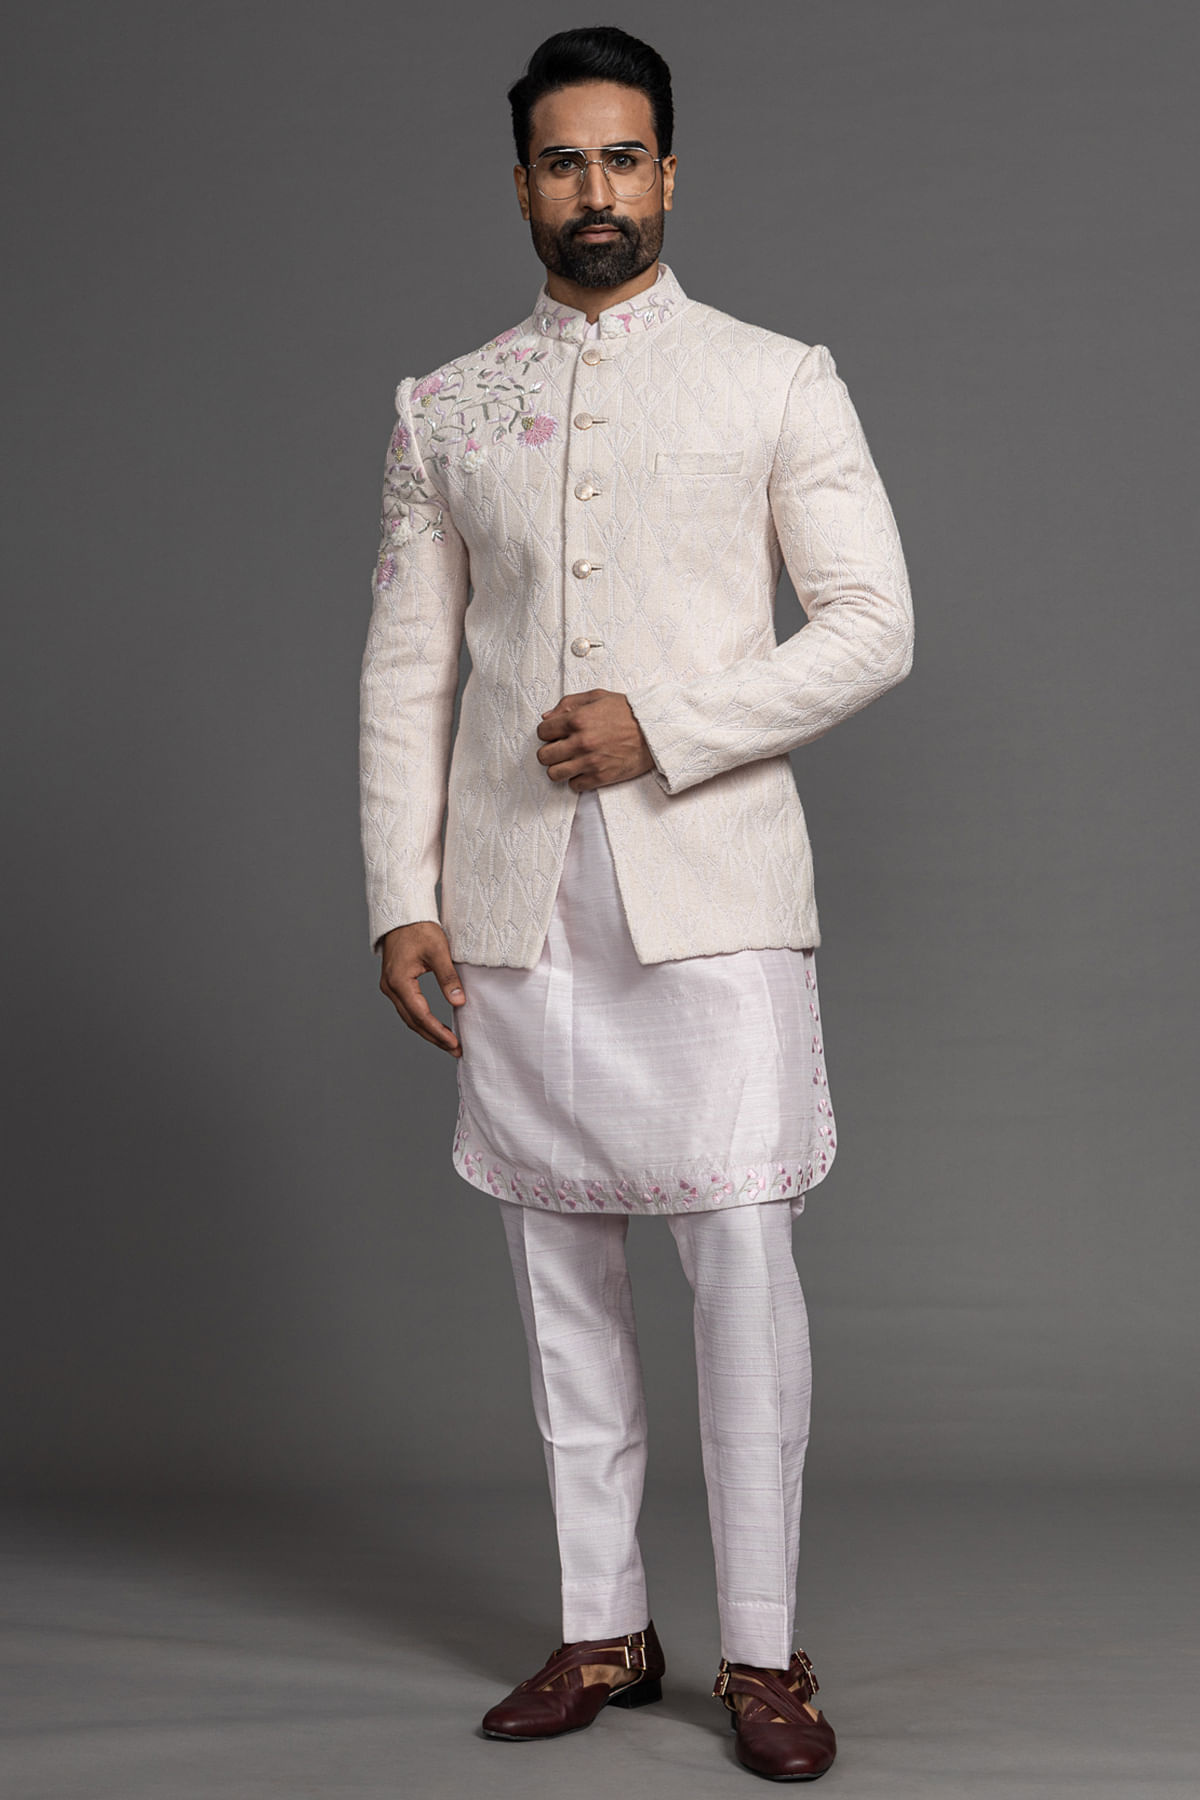 Indowestern & Dhoti for Men Sherwani Set for Men Jodhpuri Suit Wedding  Outfit | eBay